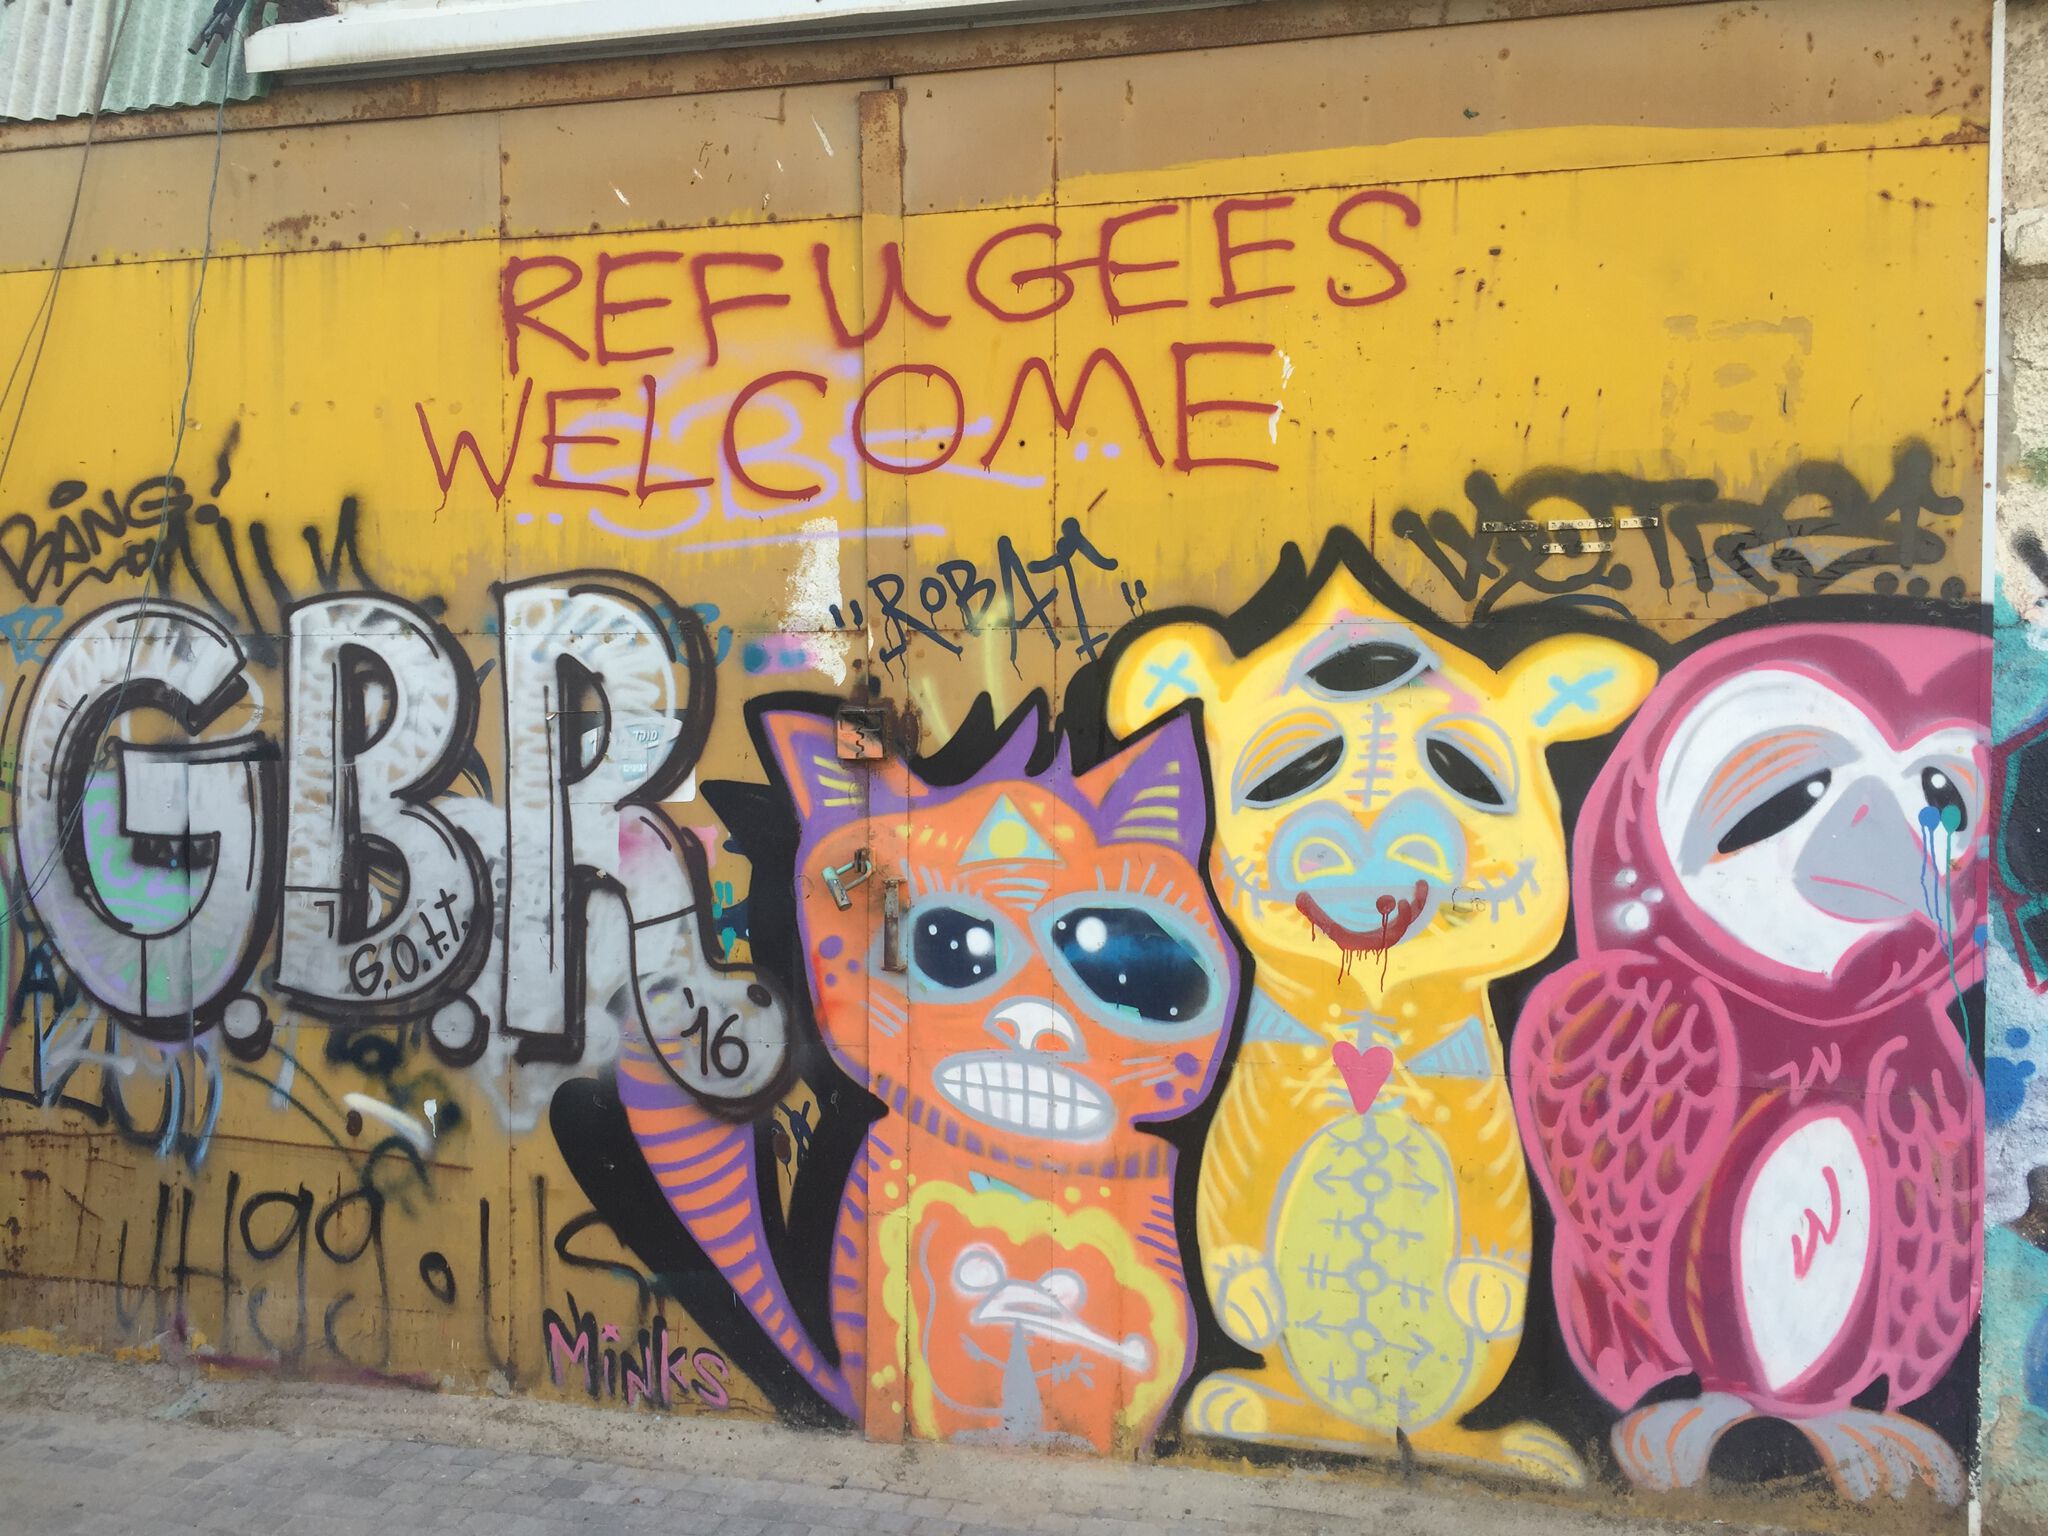 Dora Suger Minks&mdash;Refugees welcome